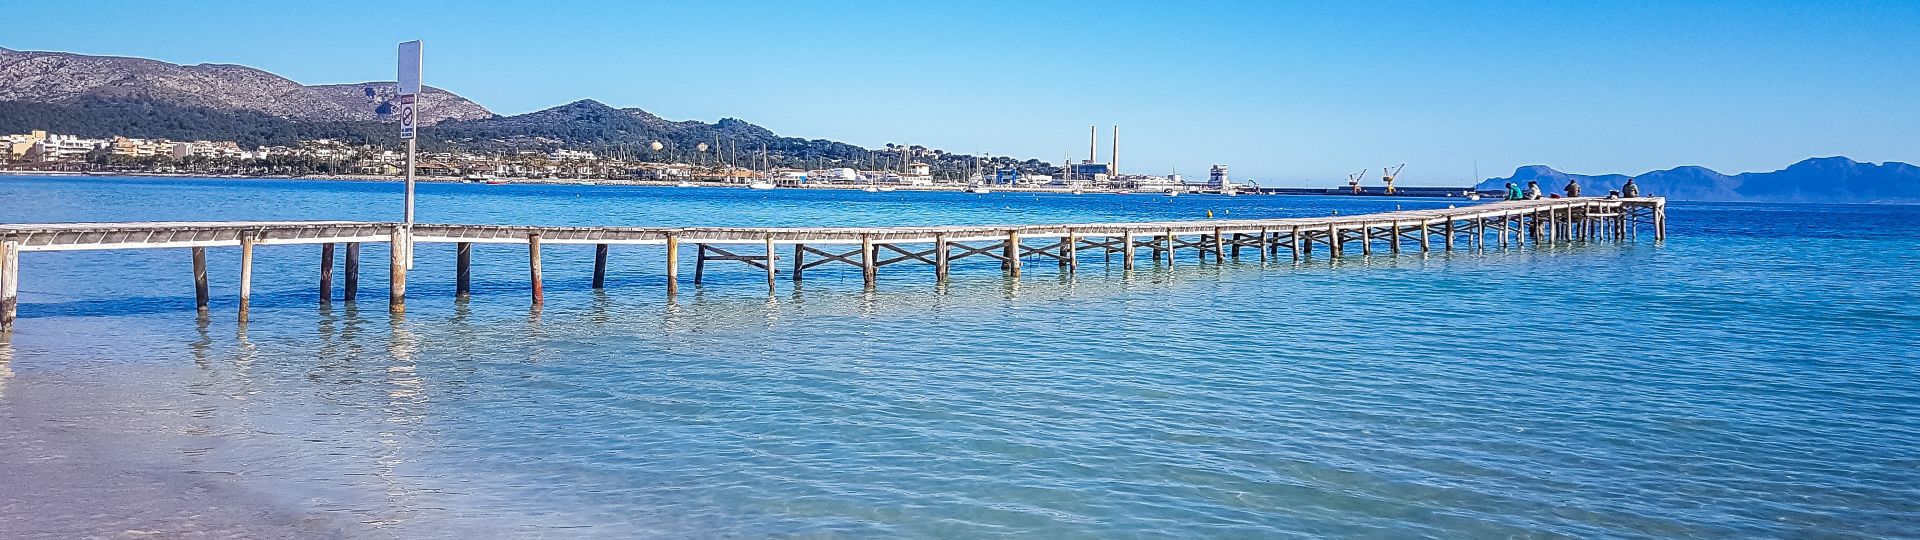 Bucht von Alcudia, Mallorca